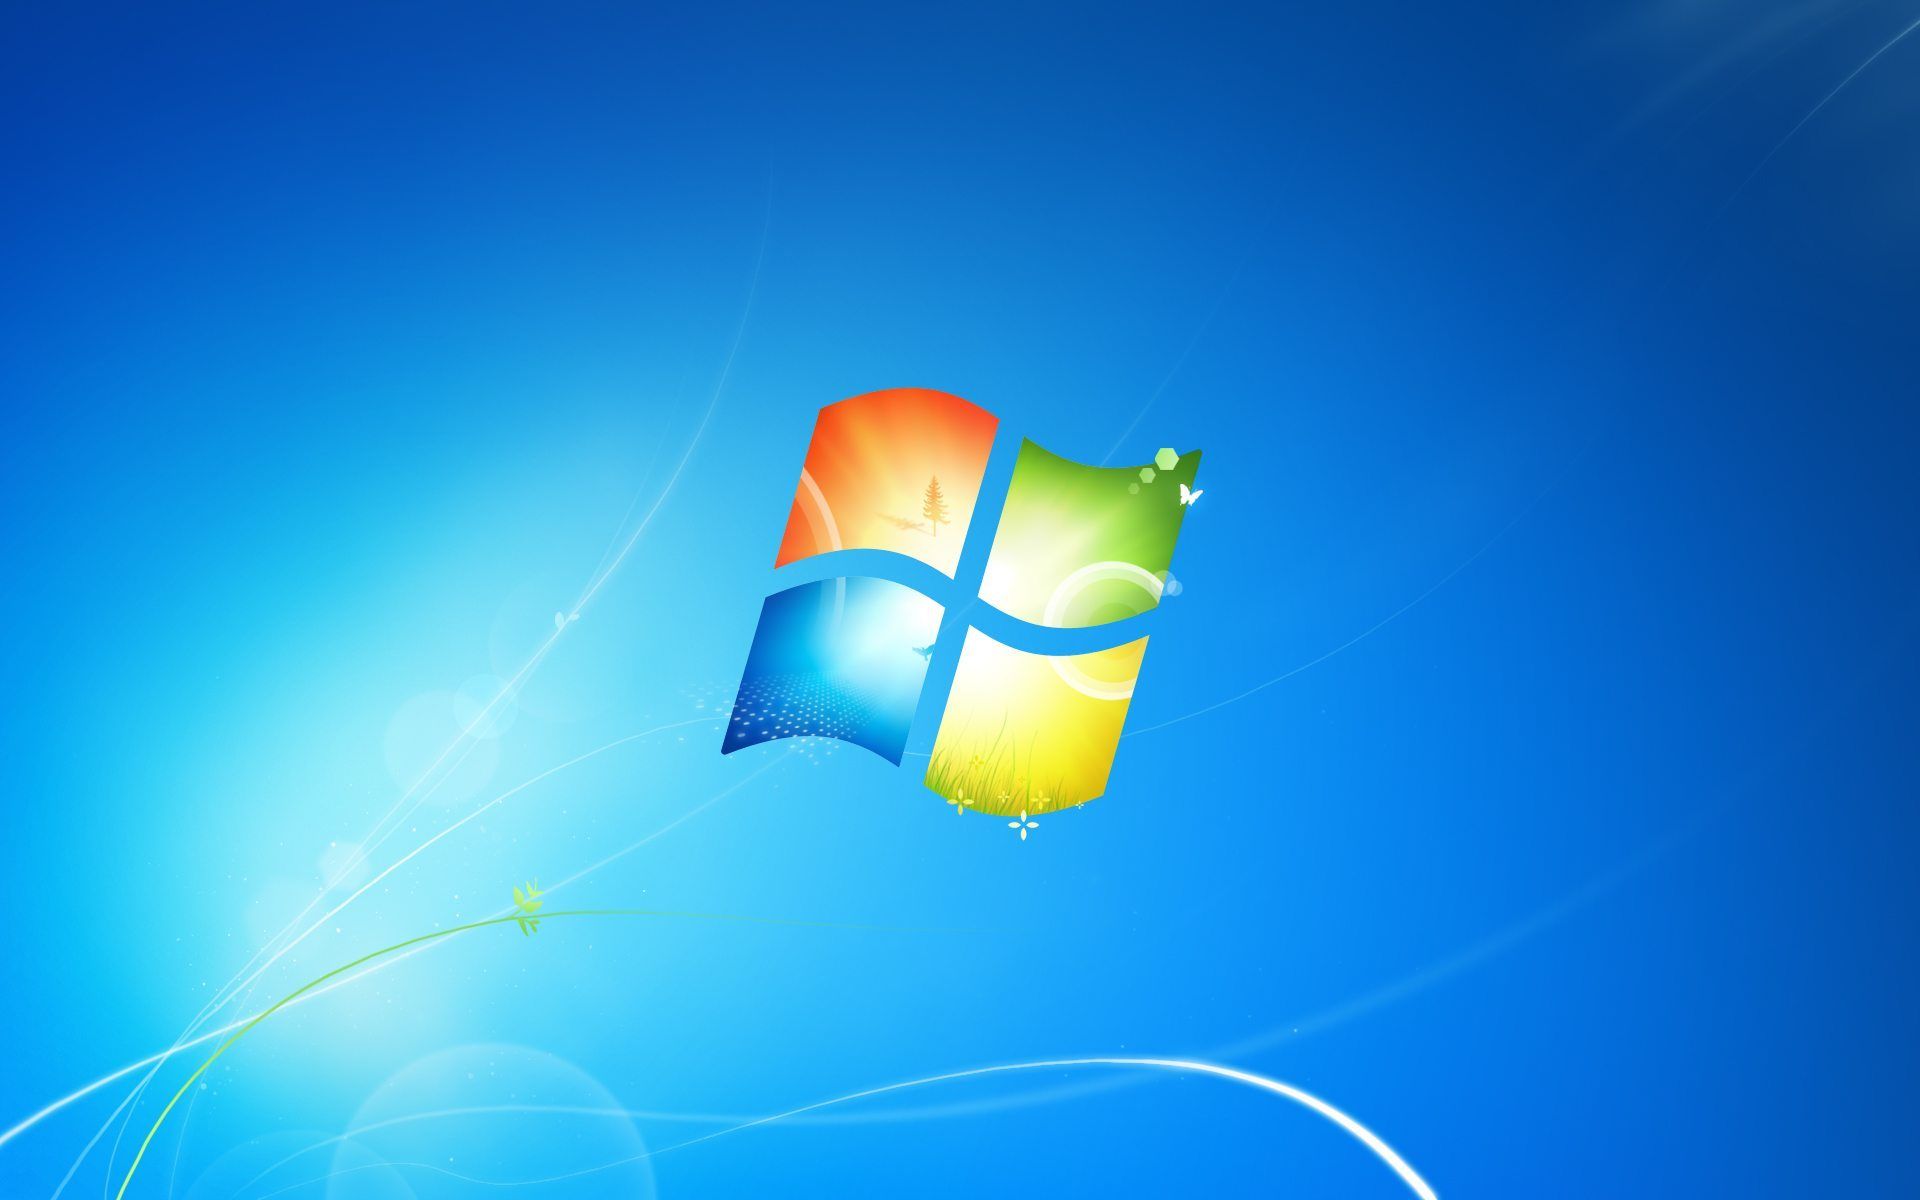 Hỗ trợ kết thúc Windows 7: Đừng lo lắng nếu bạn đang tìm kiếm giải pháp cho việc kết thúc Windows